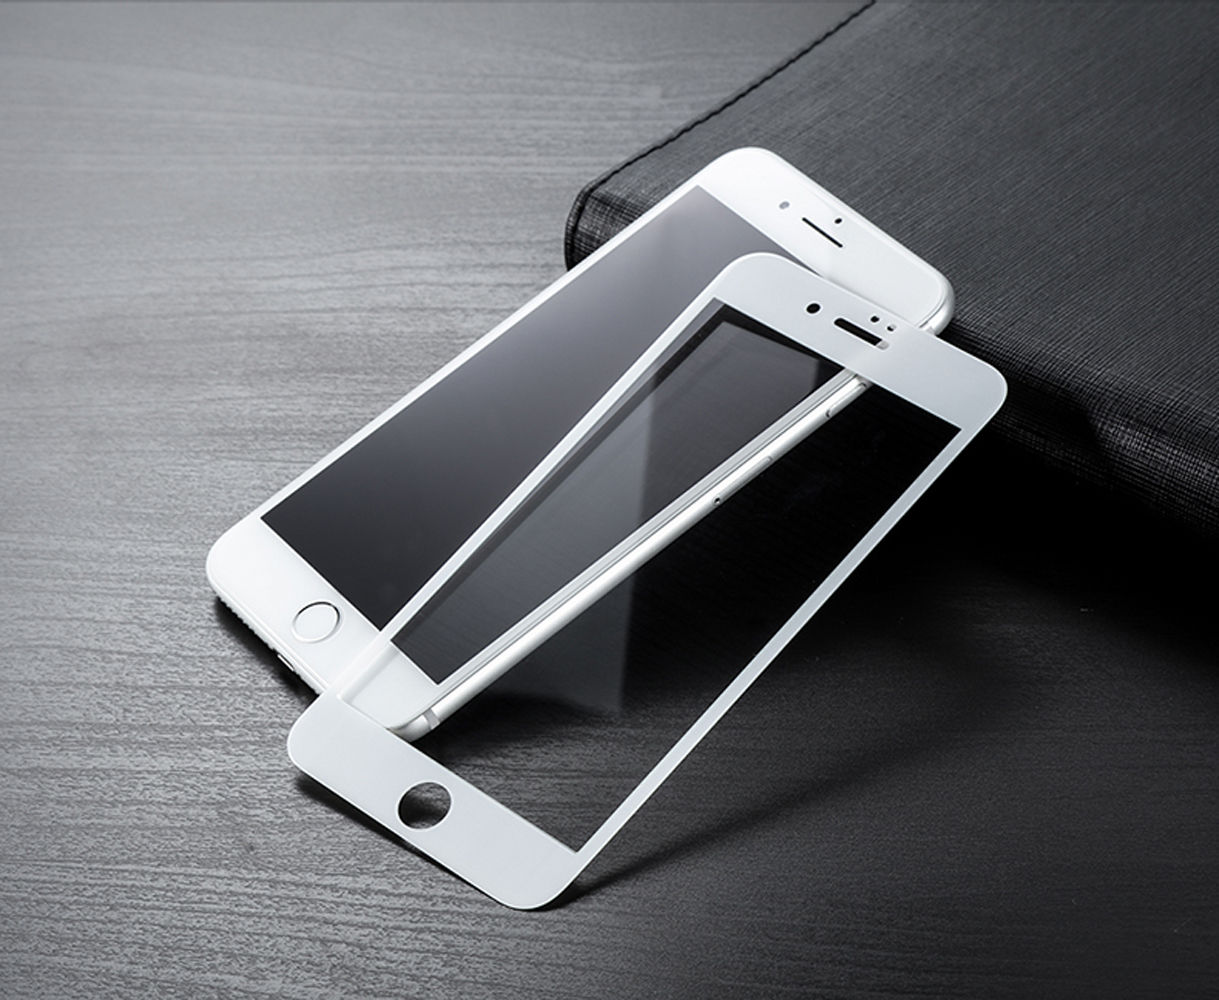 Защитное стекло 5D Bmcase для Apple iPhone 7 plus /5.5"/картон.упаковка/ белый.